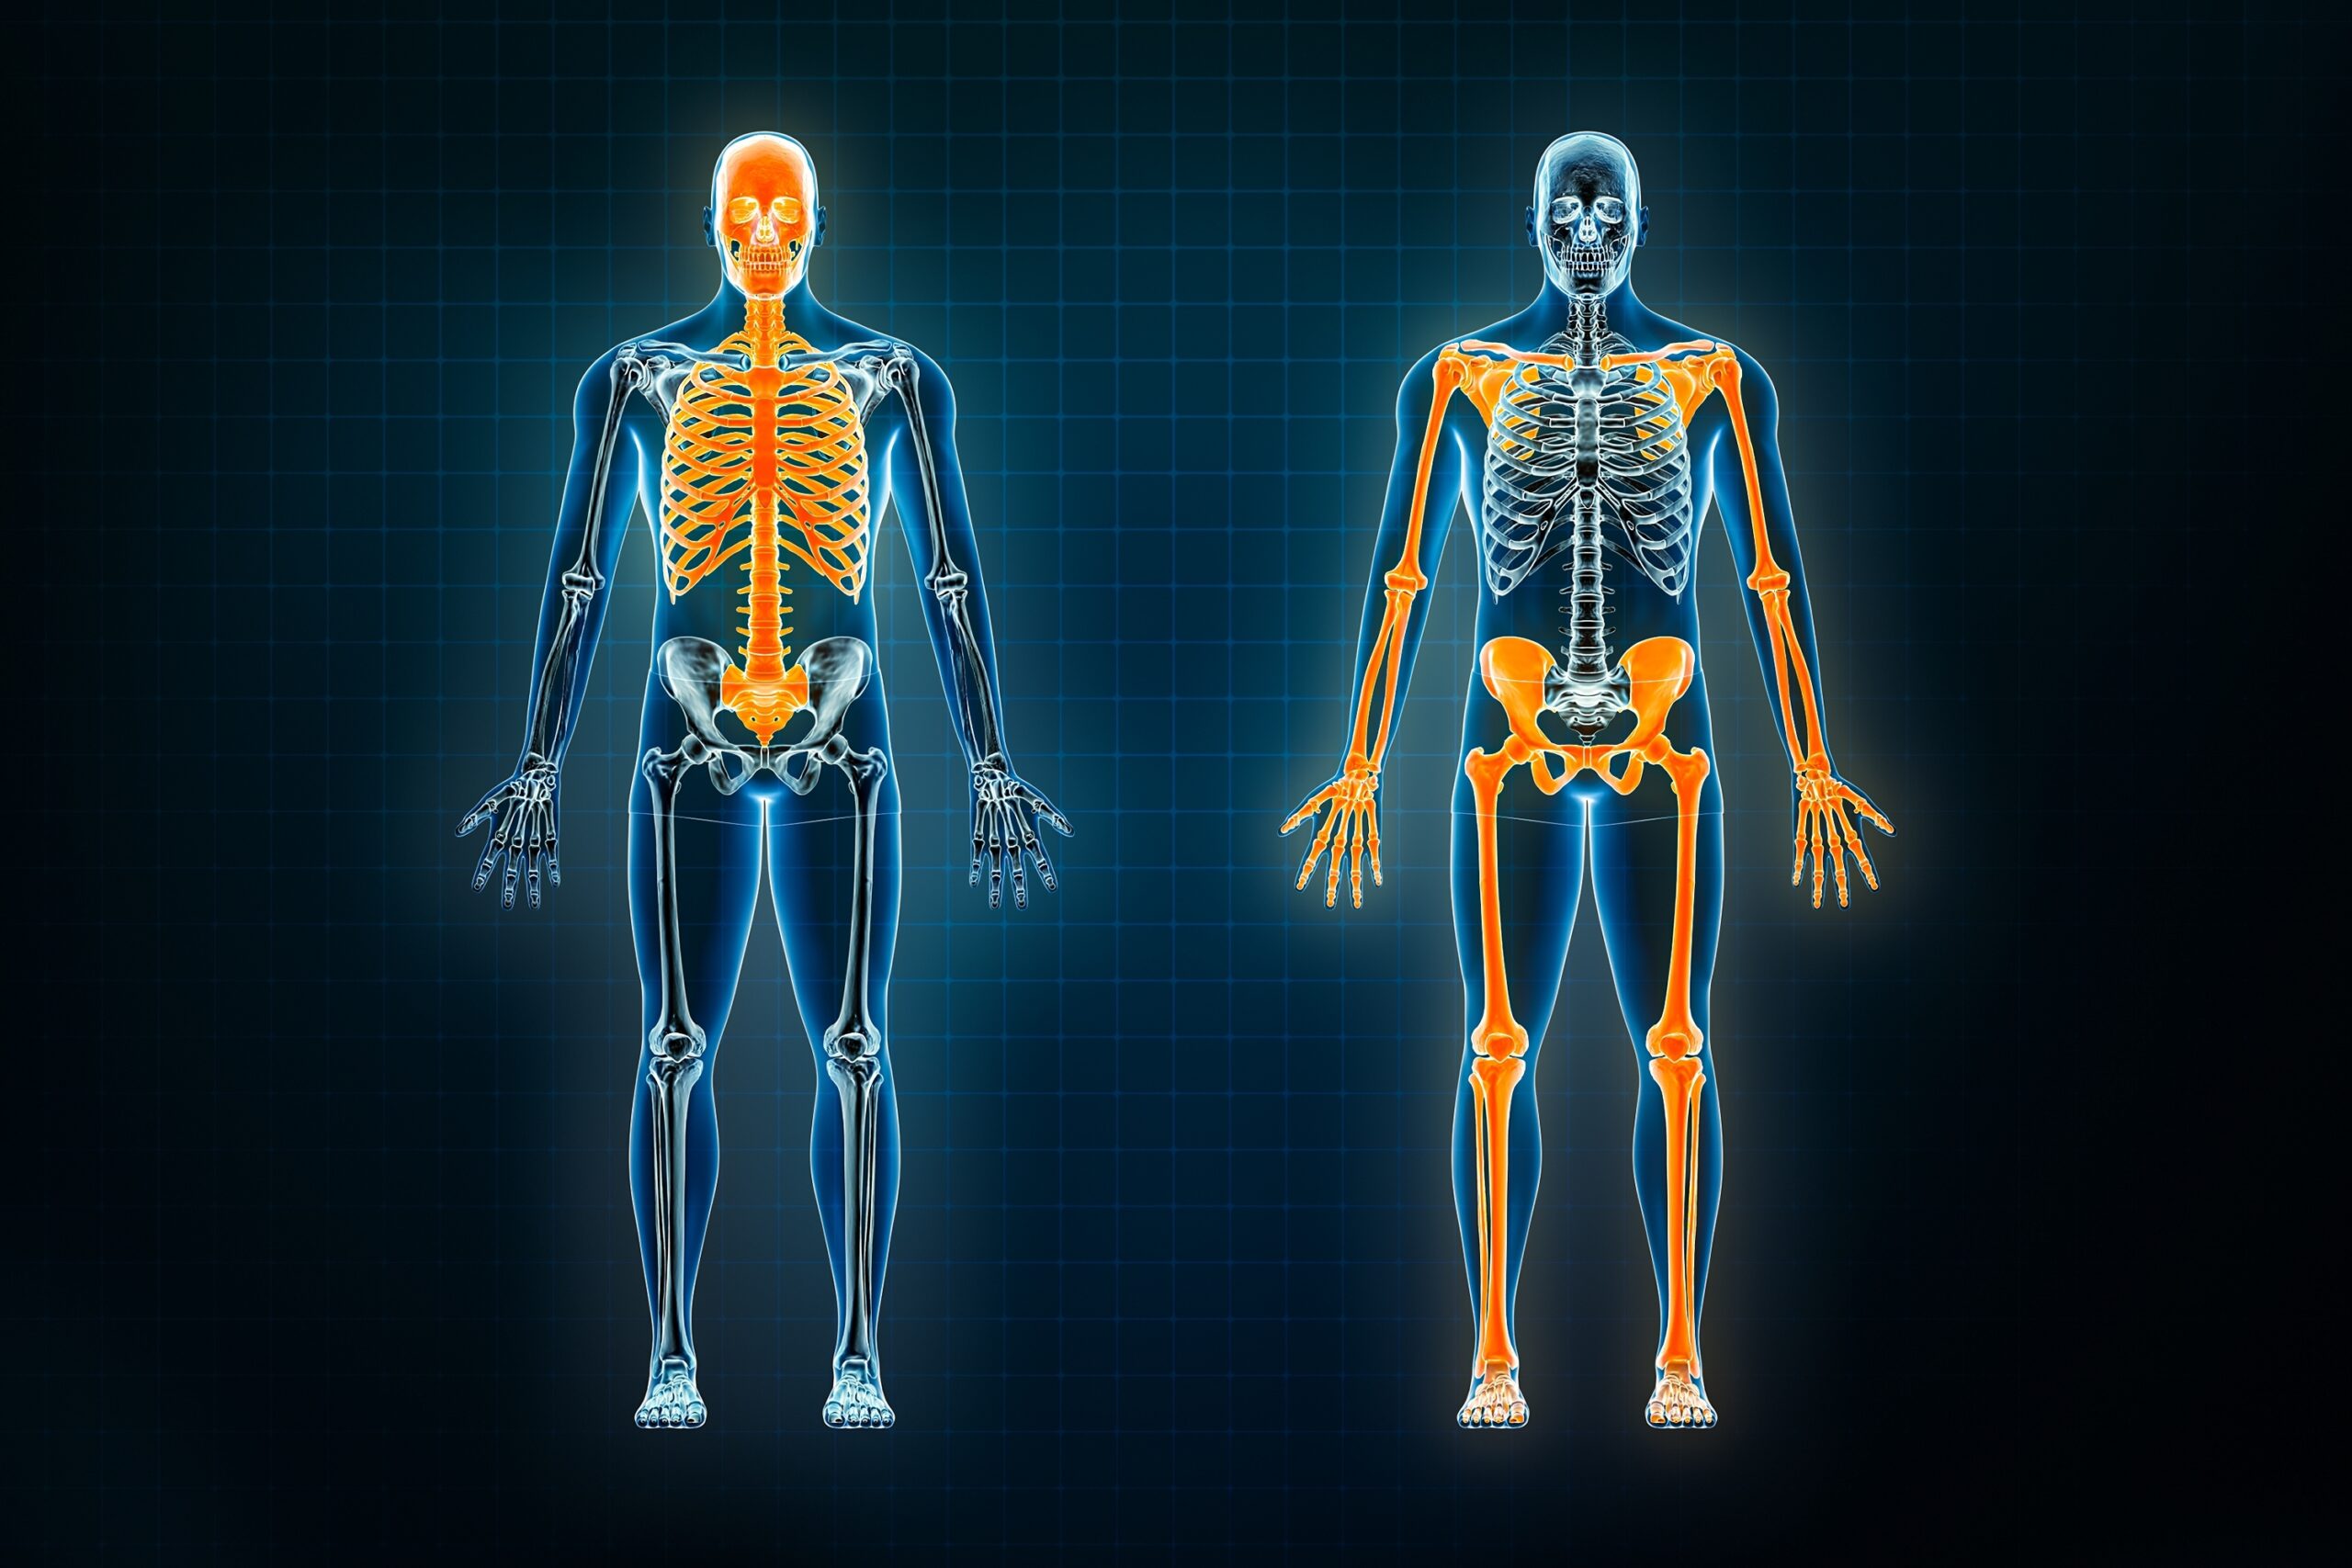 Knochenstruktur - was geschieht im Inneren der Knochen?